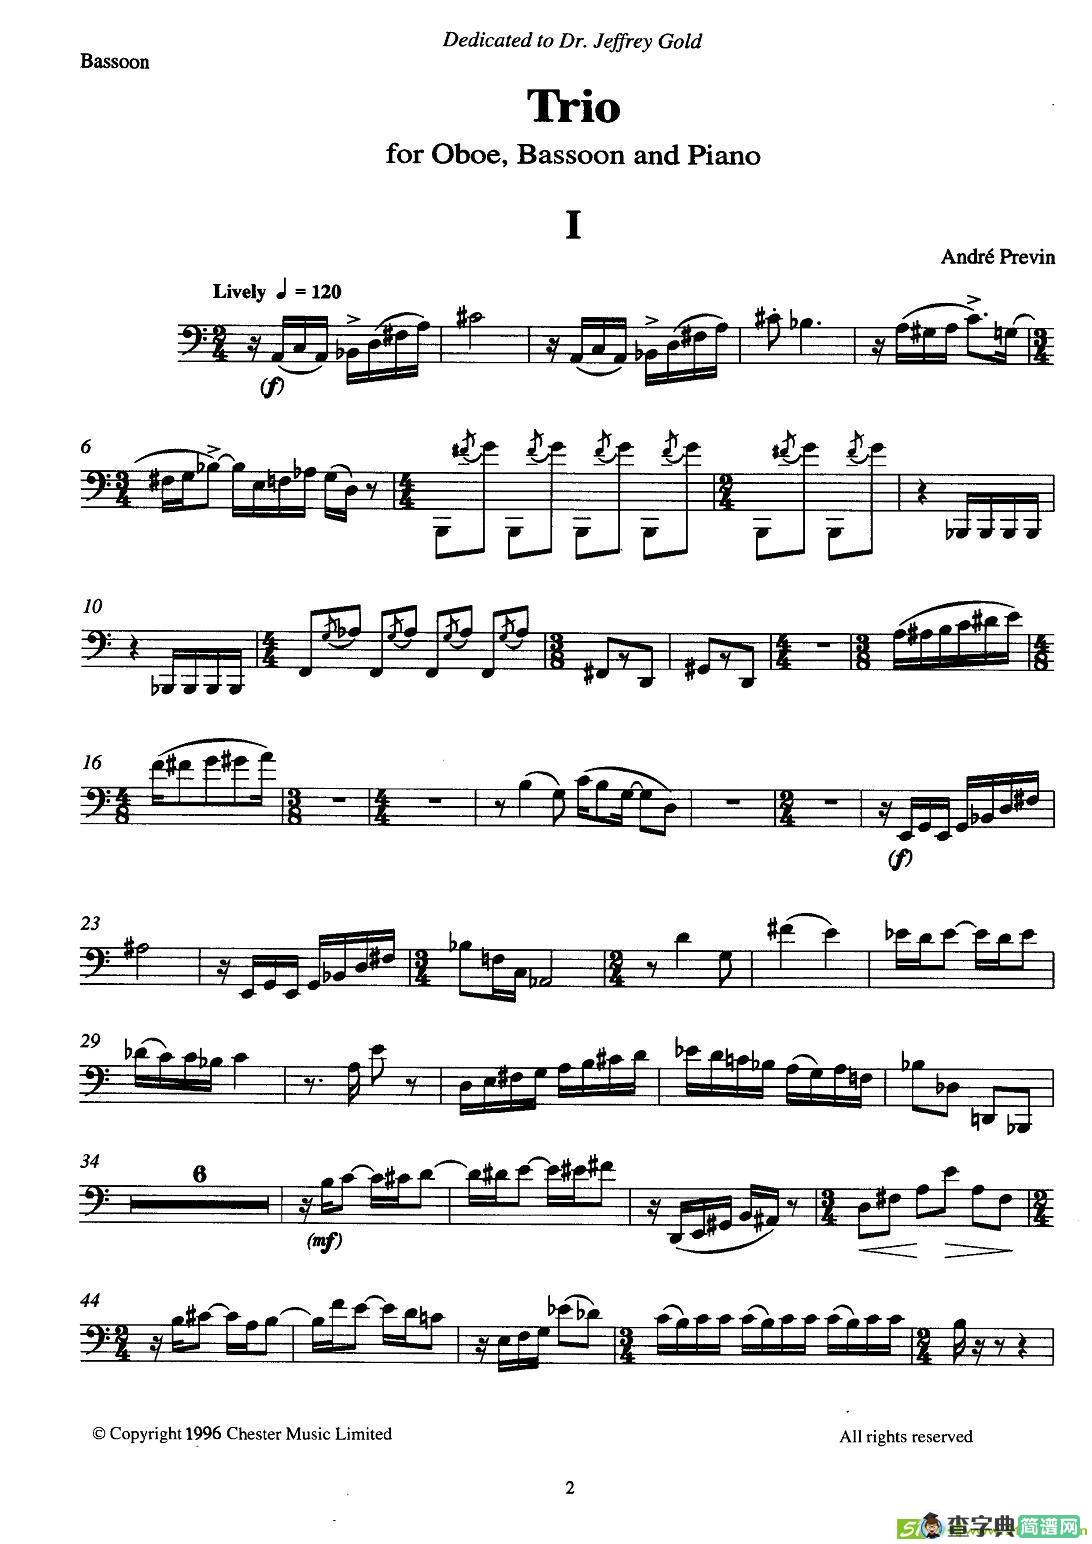 巴松双簧管与钢琴三重奏铜管谱(安德列·普列文作曲)